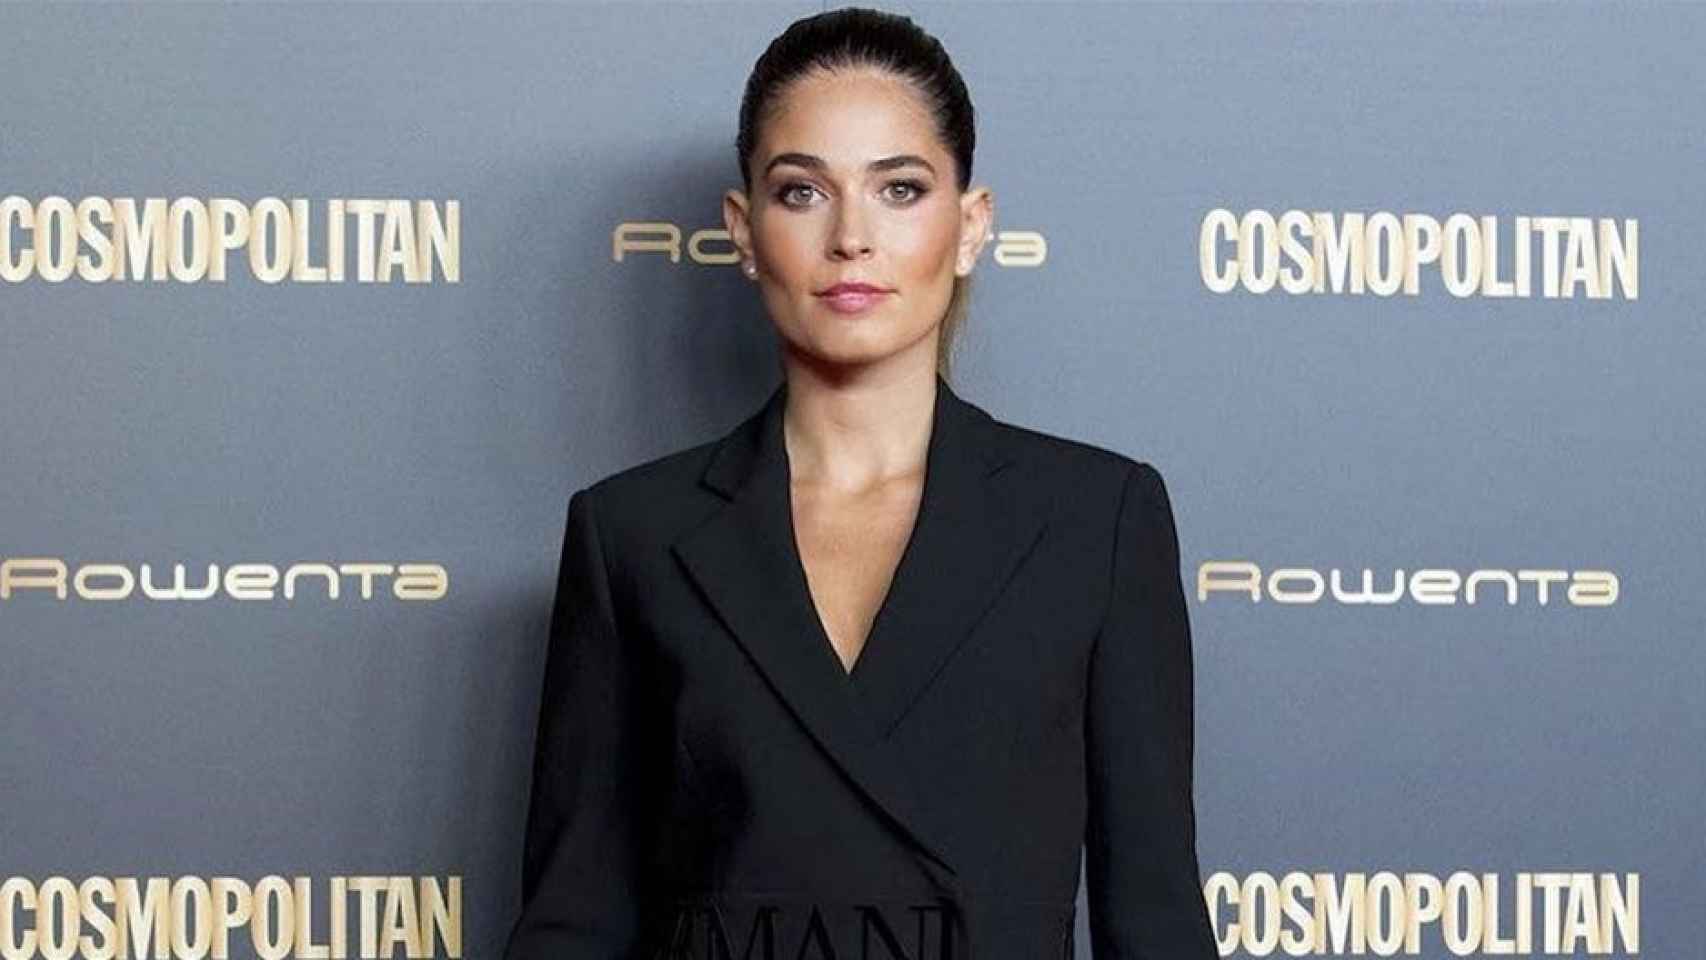 La modelo Coral Simanovich, mujer del futbolista del Barça Sergi Roberto, en la fiesta de Cosmopolitan / INSTAGRAM